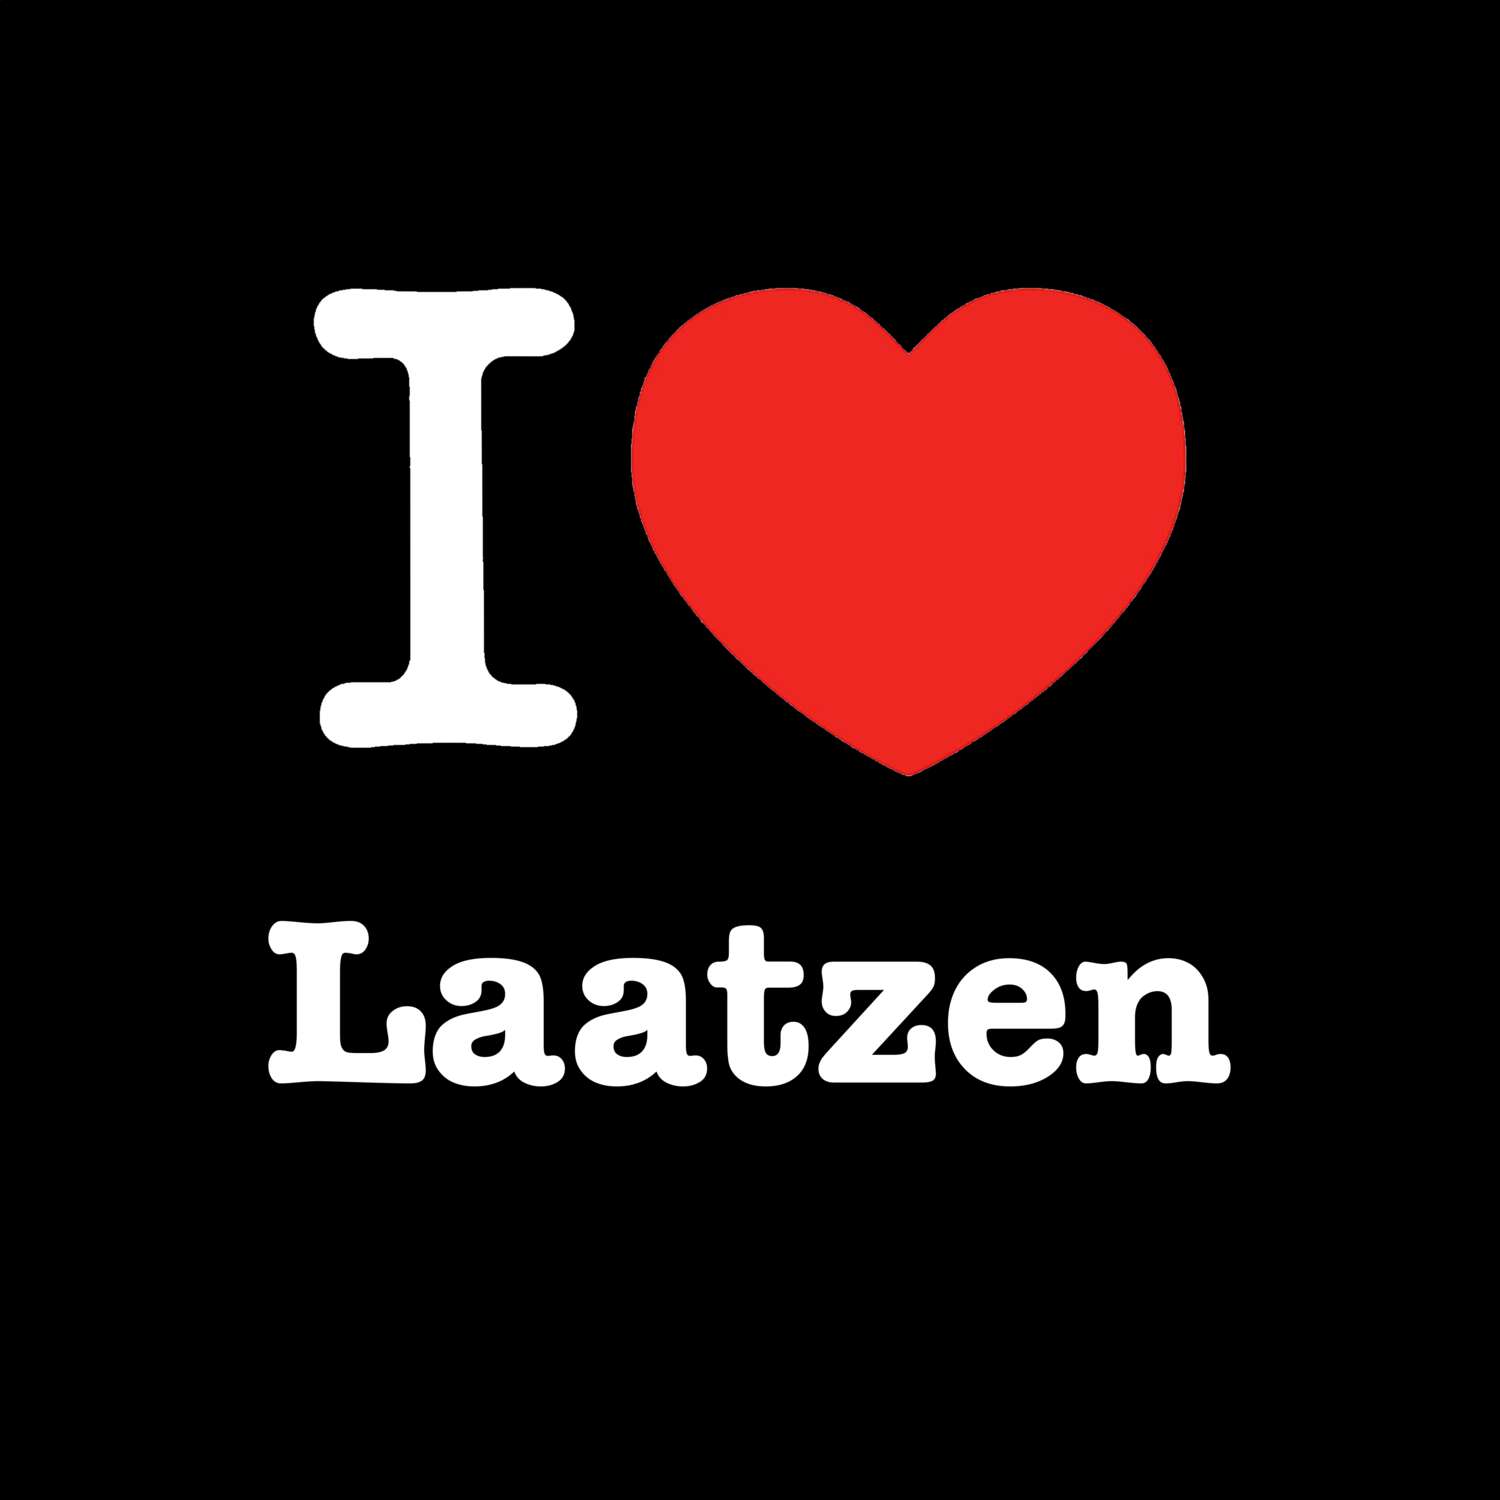 Laatzen T-Shirt »I love«